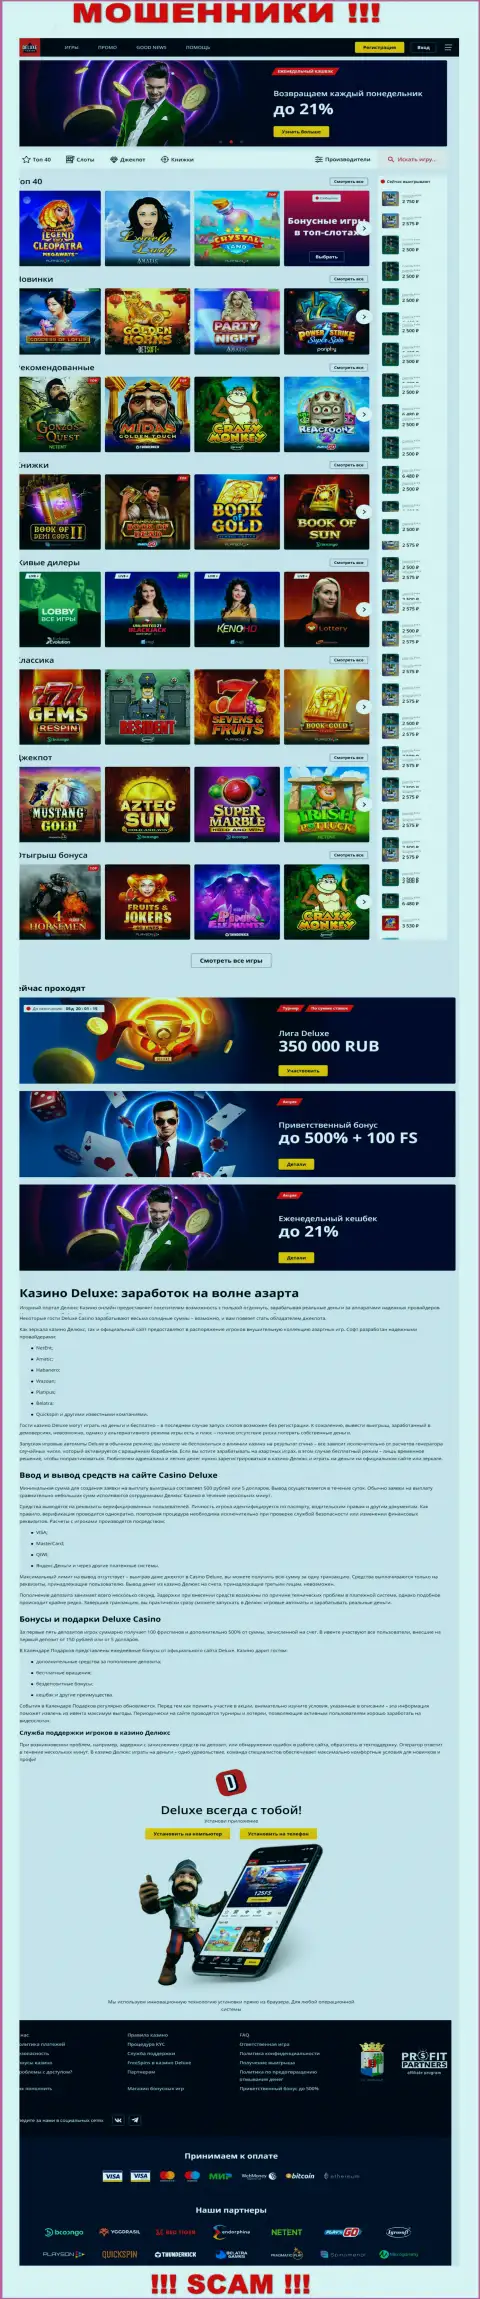 Официальная internet-страница организации Deluxe Casino